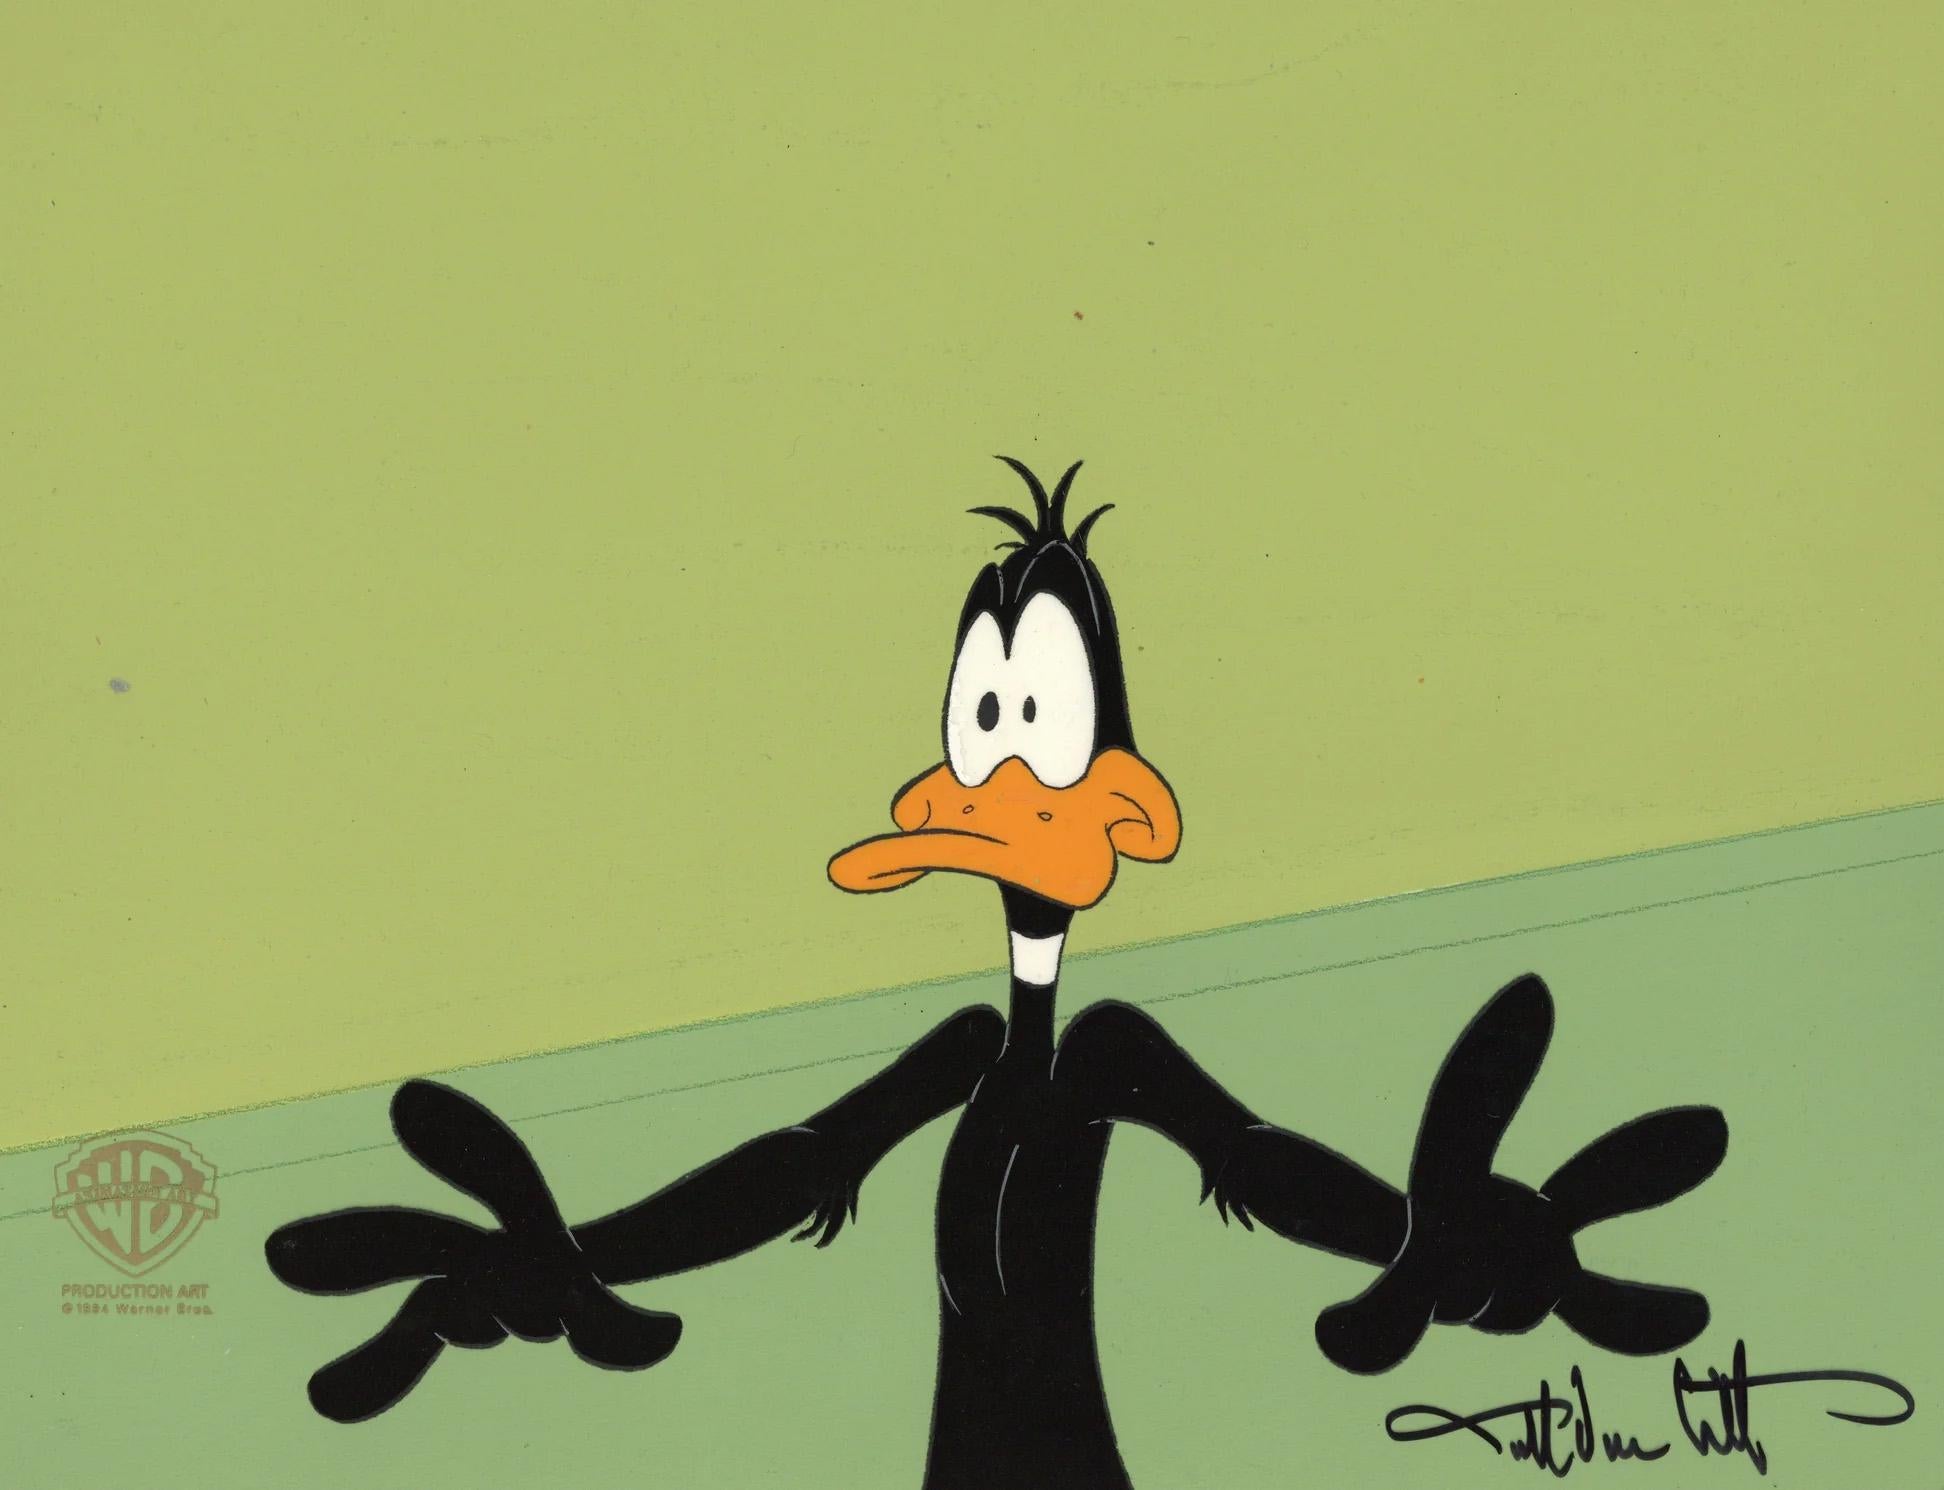 MEDIUM: Originalproduktion Cel auf Originalhintergrund 
BILDGRÖSSE: 12,5" x 10,5"
PRODUKTION: Looney Tunes, Daffy Duck's Quackbusters
SKU: IFA9514
GEZEICHNET: Darrel Van Citters

ÜBER DAS BILD: Looney Tunes ist eine Serie von animierten Kurzfilmen